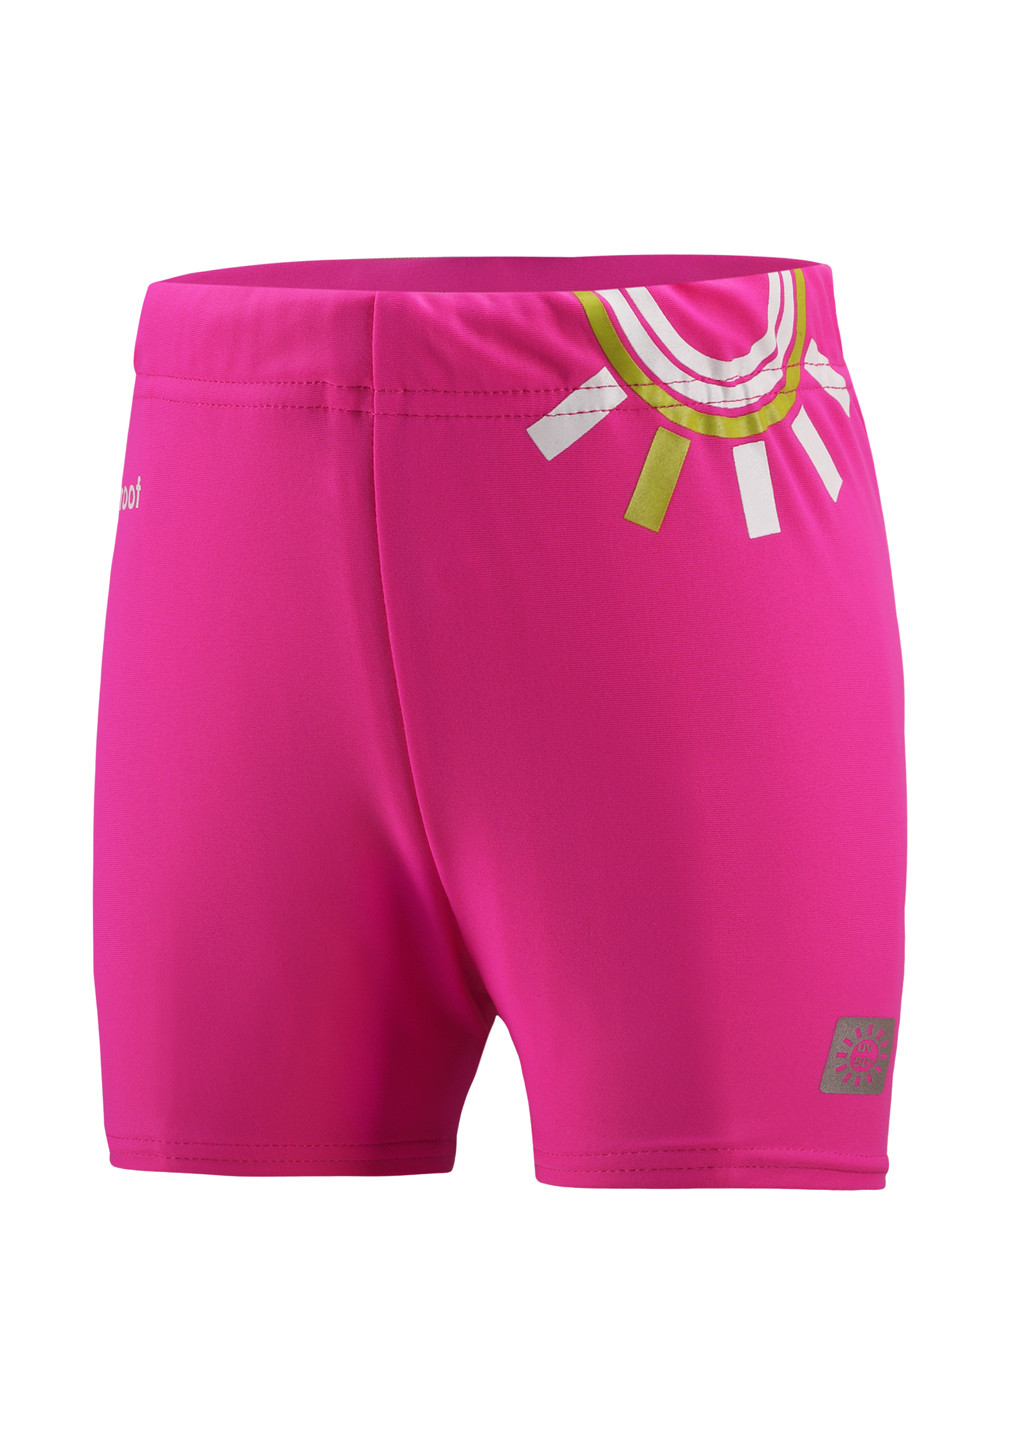 Купальные шорты Reima рисунки розовые спортивные